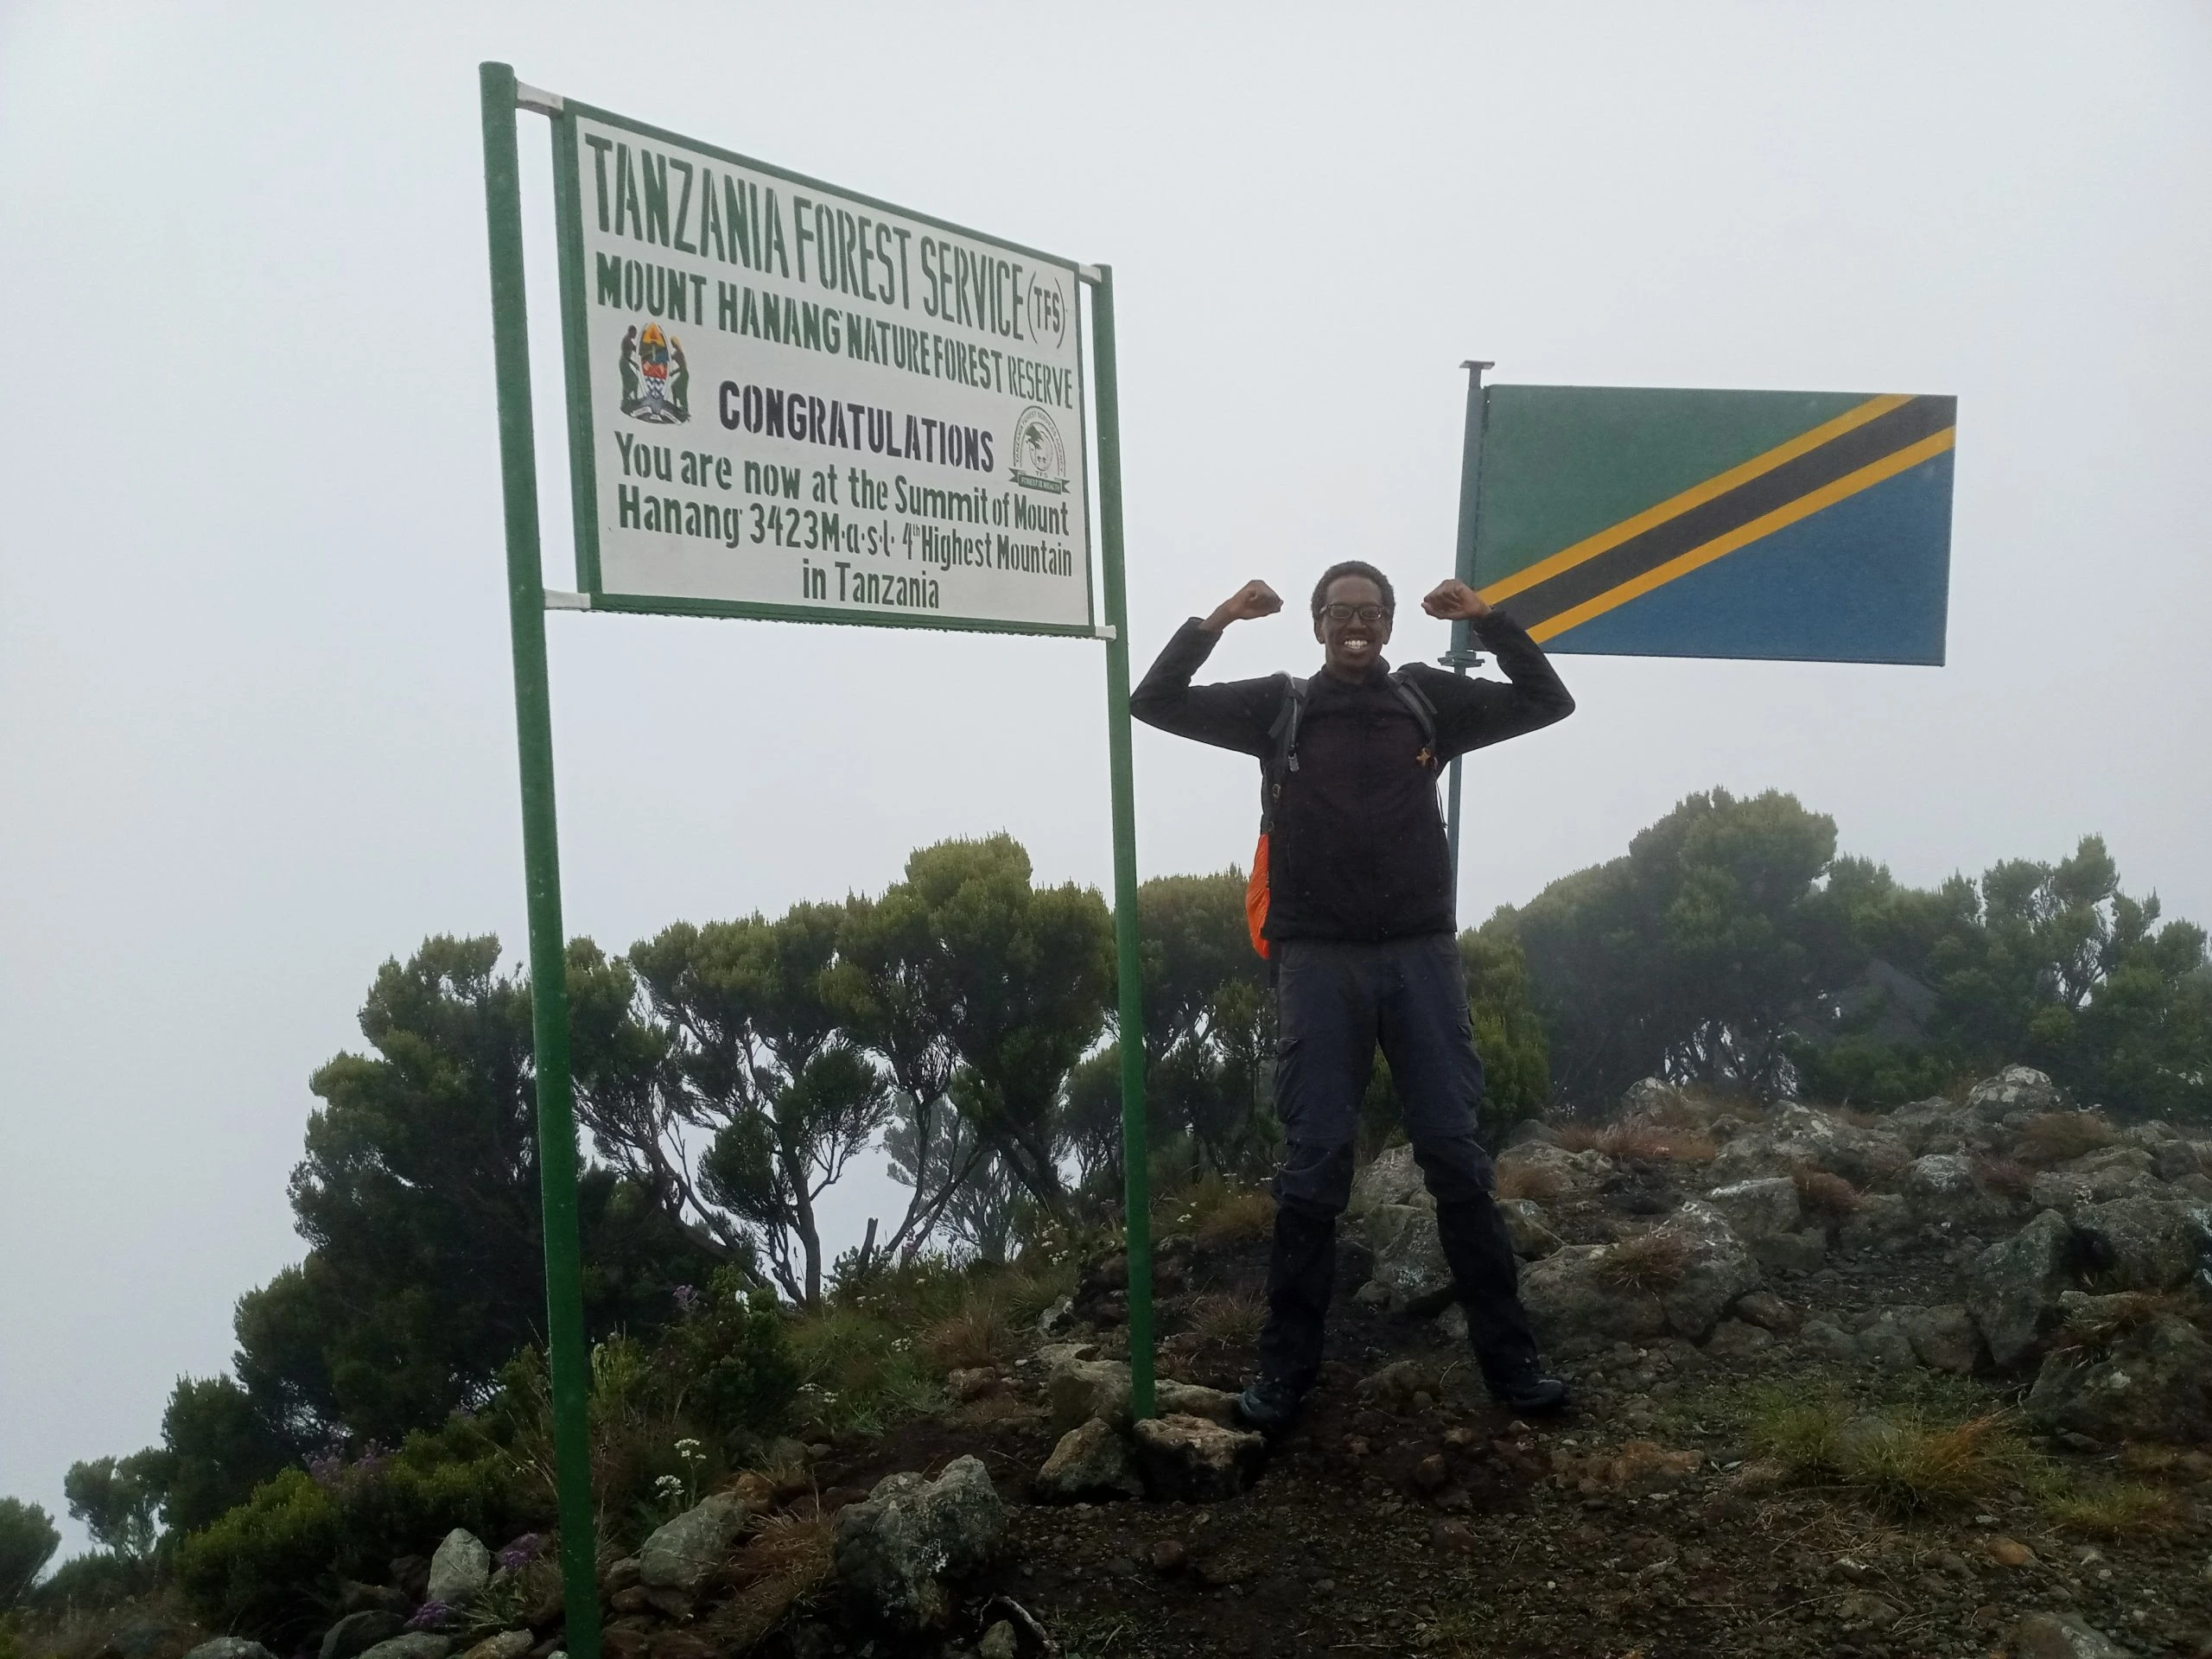 Mount Hanang Climbing in Tanzania